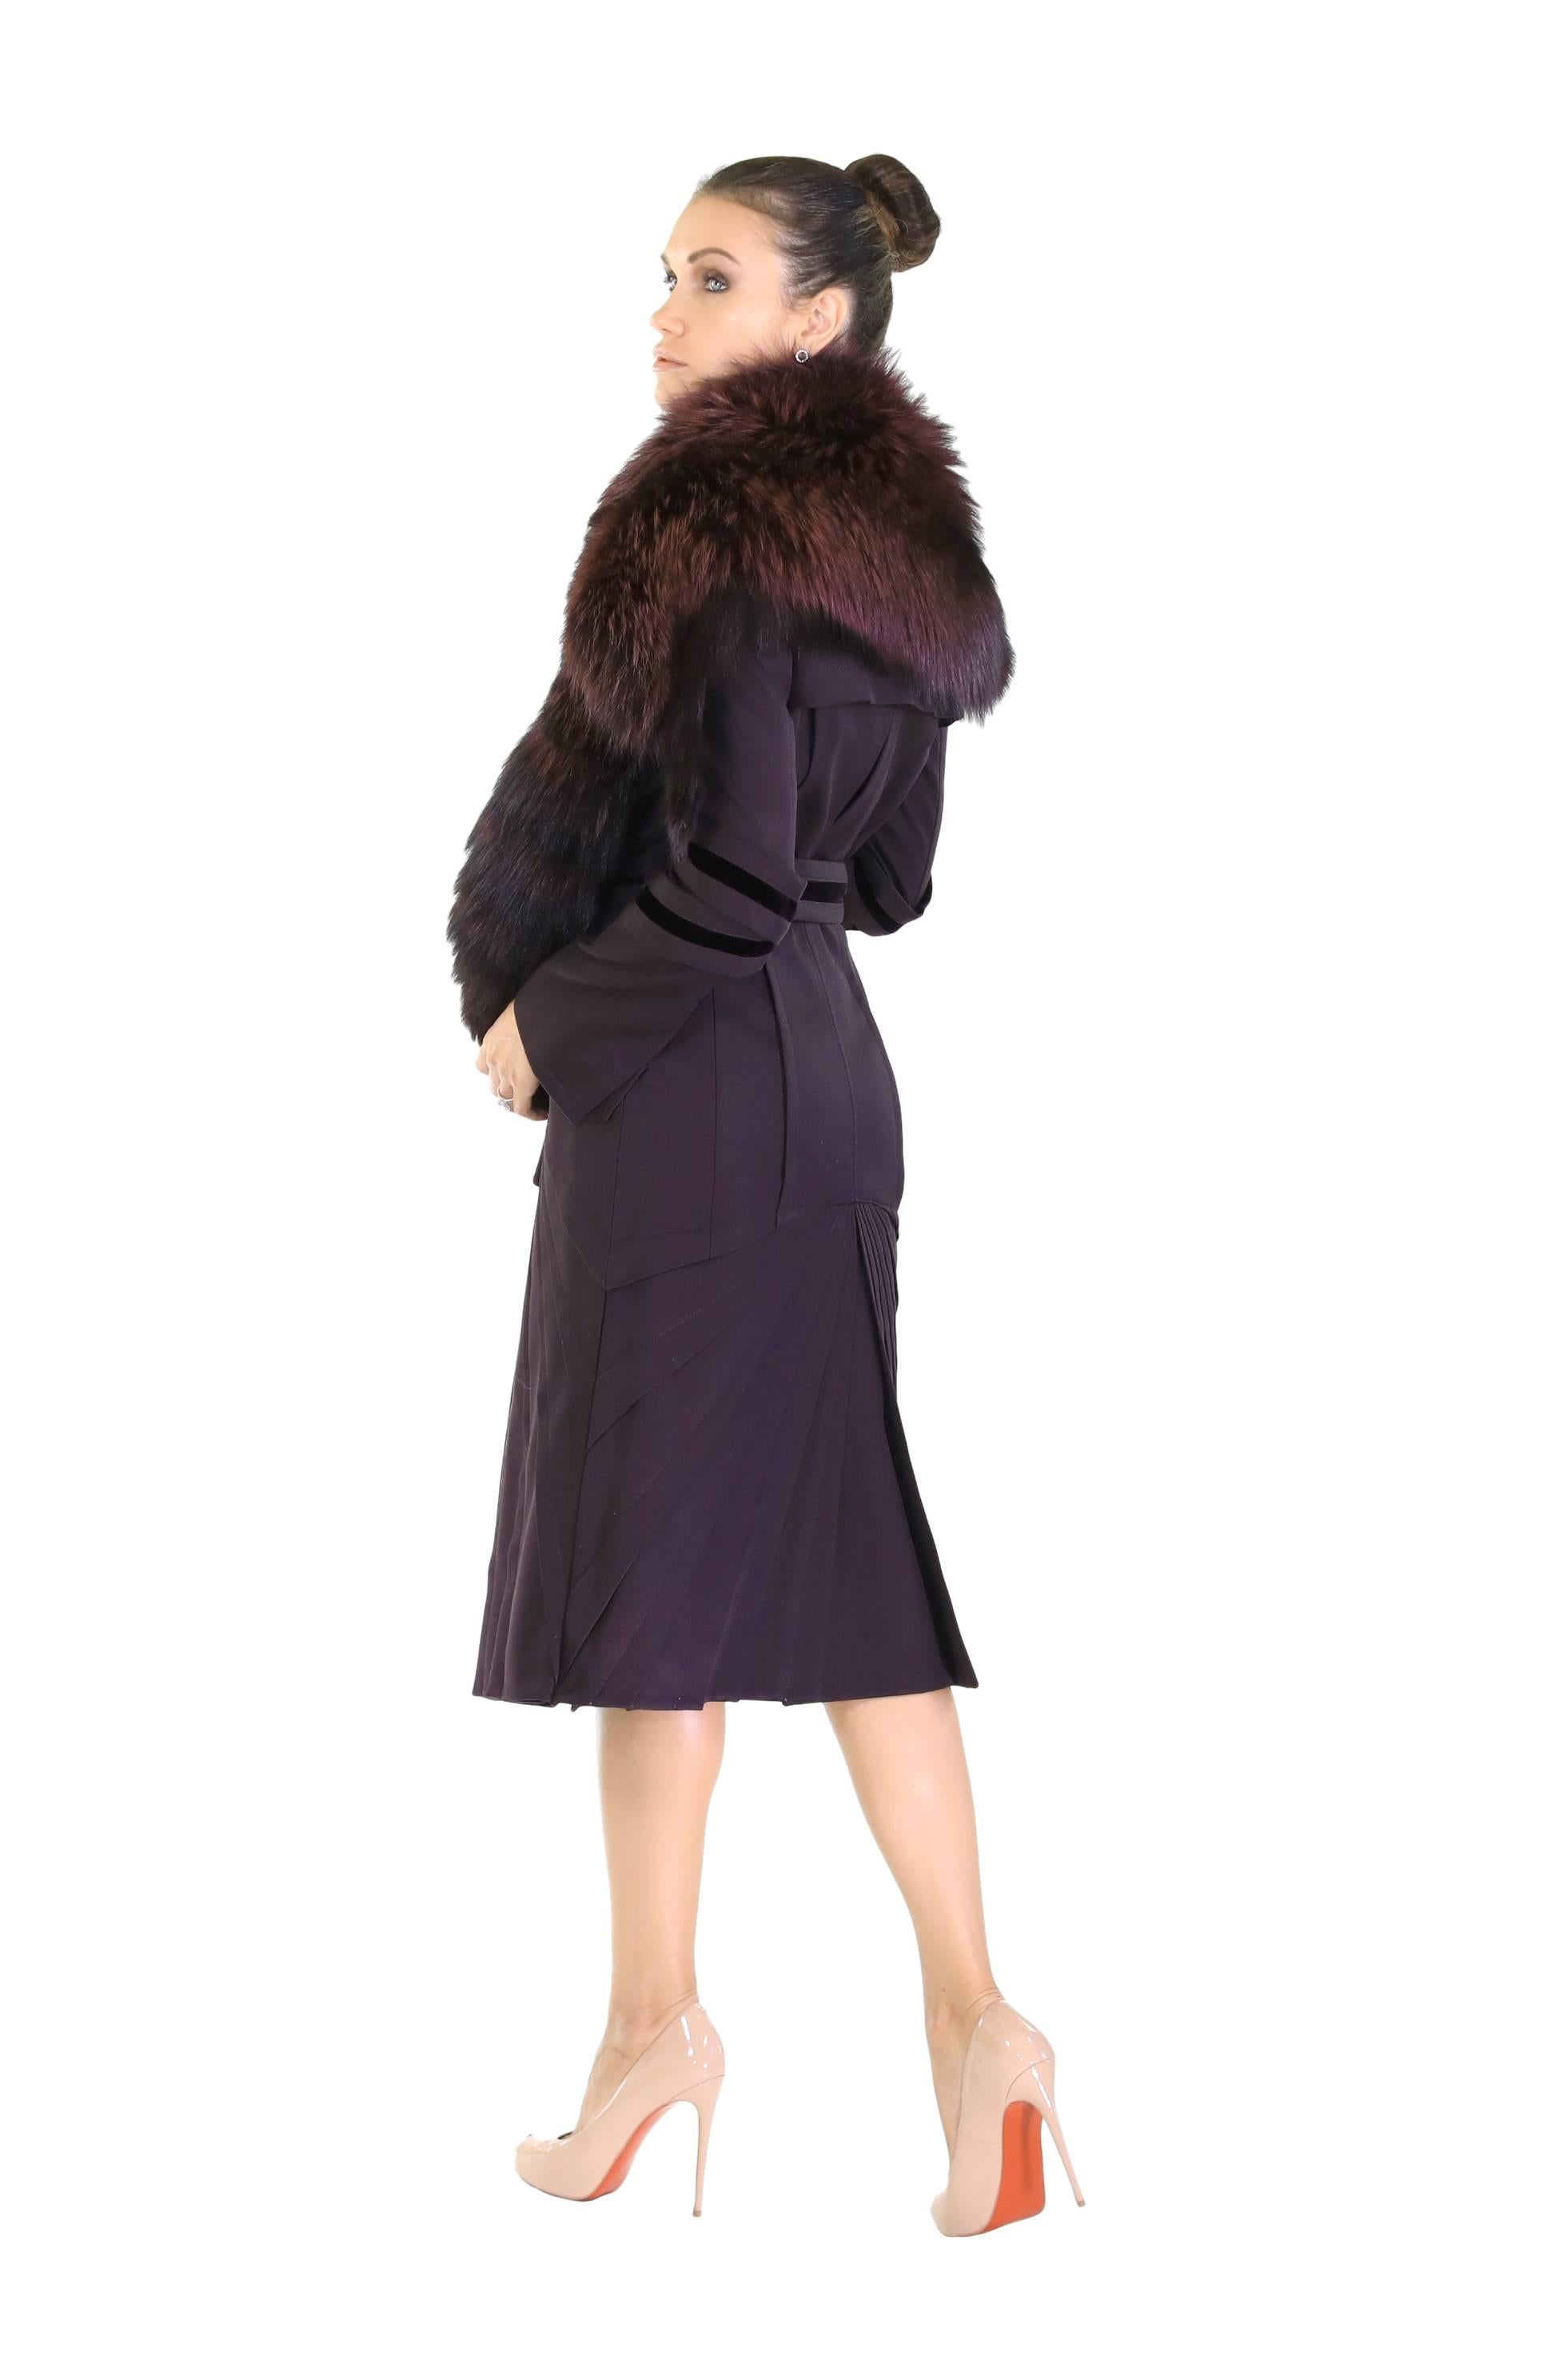 Mantel aus Fuchspelz von Tom Ford für Gucci mit Fuchspelz, F/W 2004  Damen